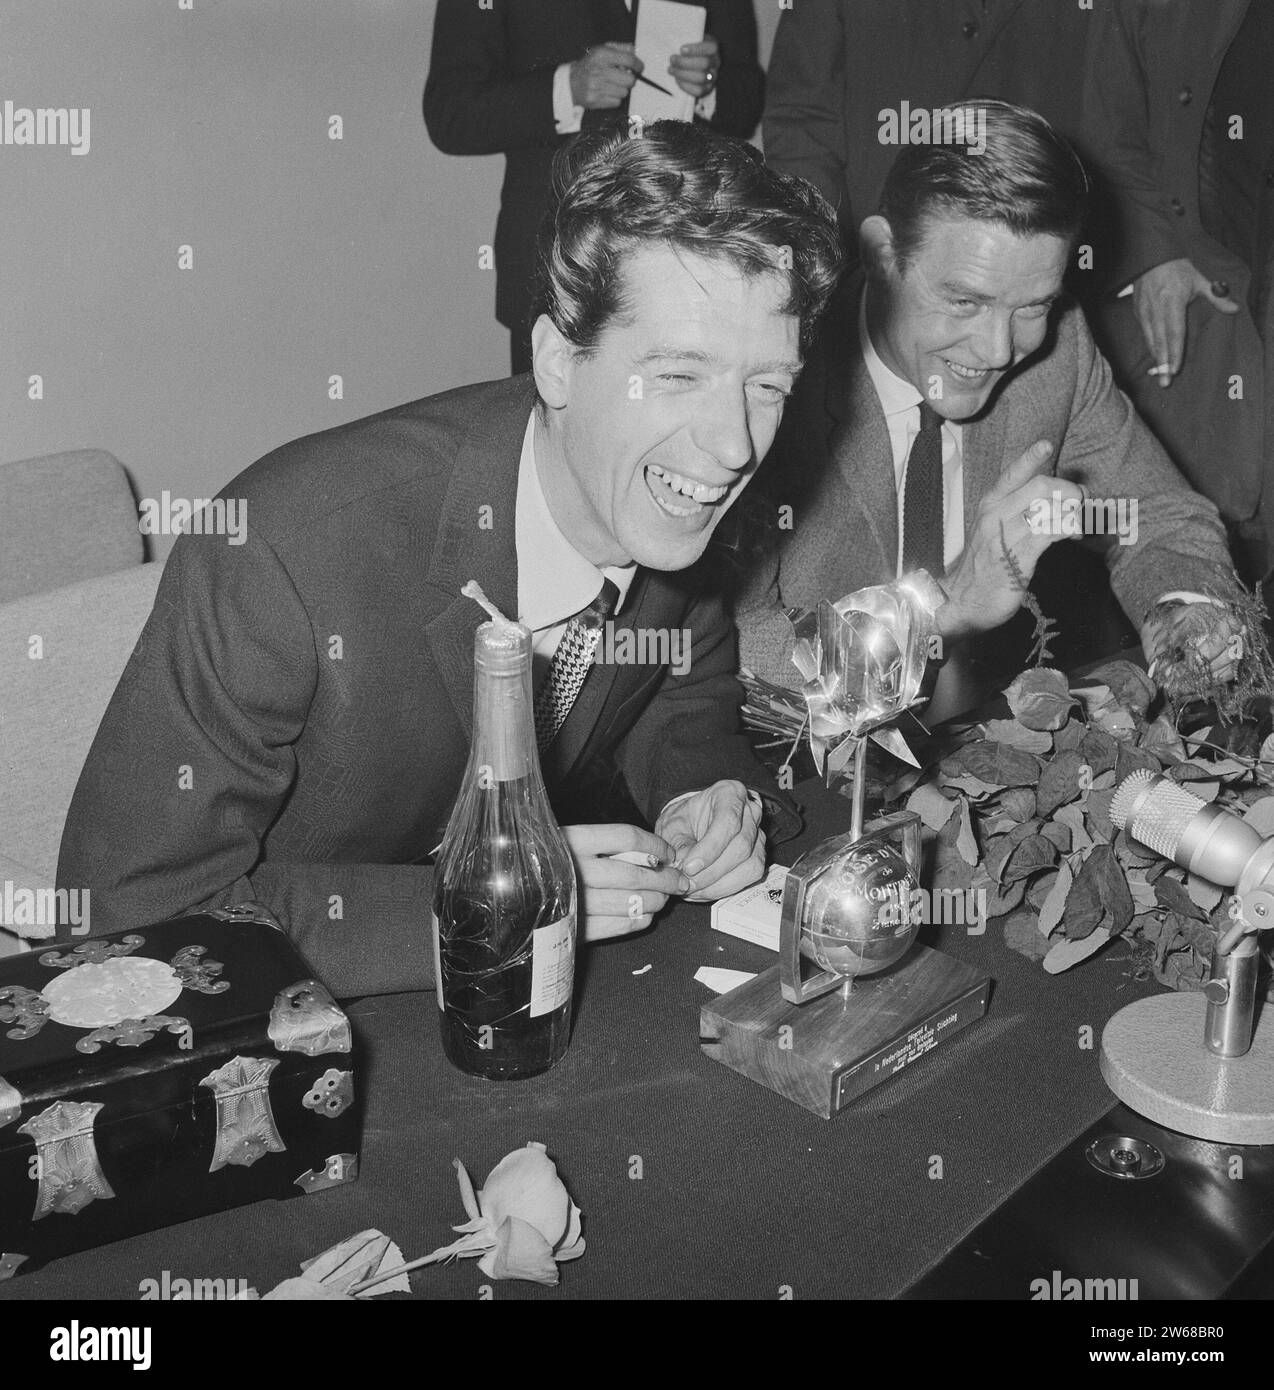 Rudi Carrell a remporté la rose d'argent. Rudi Carrell pendant la conférence de presse ca. 25 avril 1964 Banque D'Images